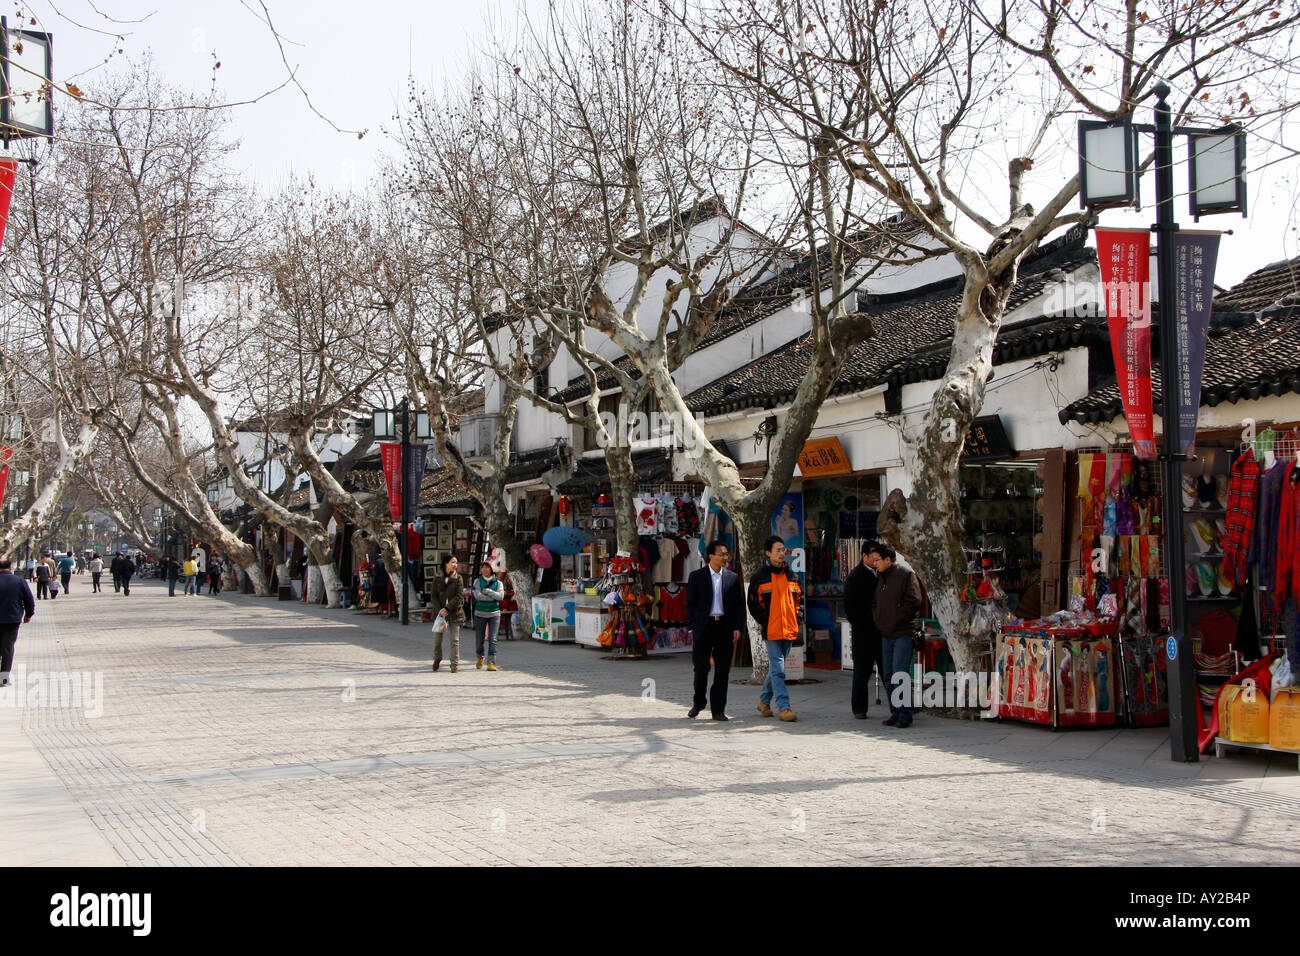 Straße der touristischen Geschäfte am Eingang zum Humble Administratoren Garten in Suzhou, China Stockfoto